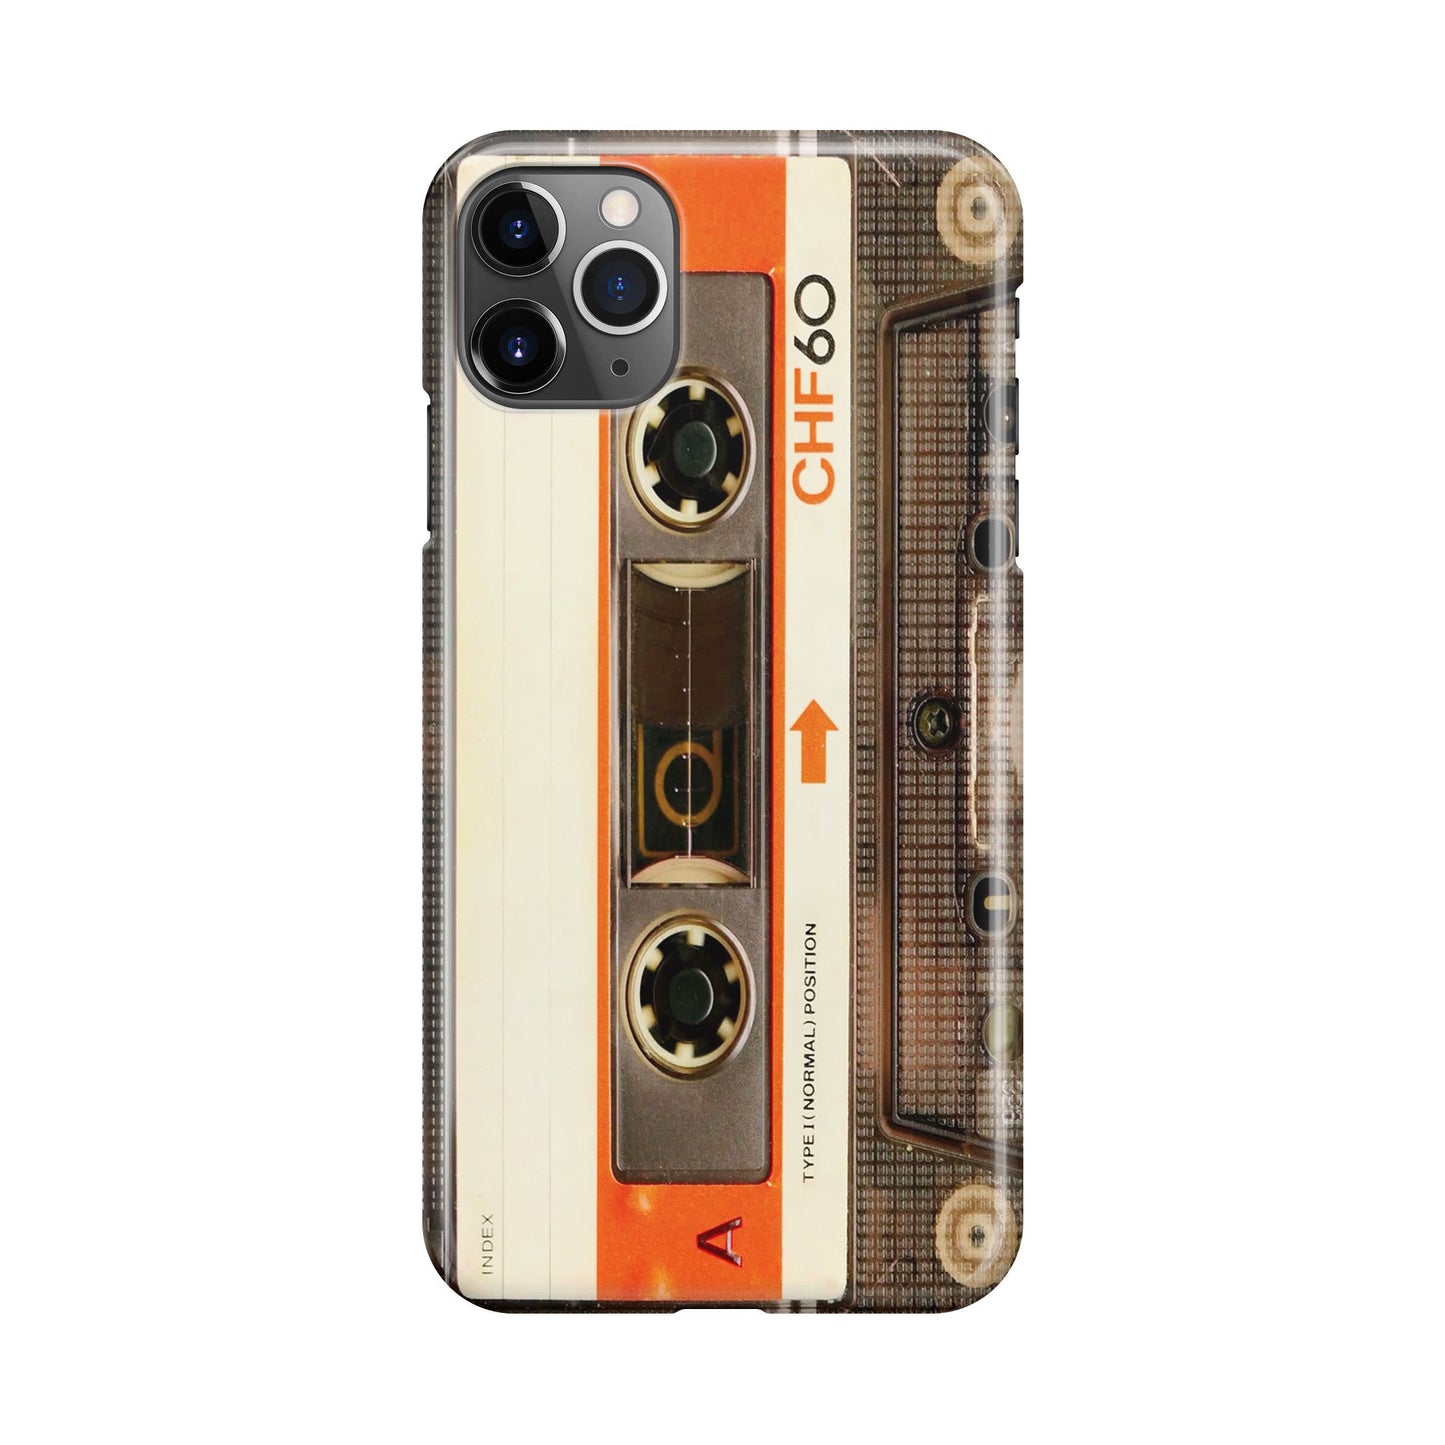 Vintage Audio Cassette iPhone 11 Pro Max Case